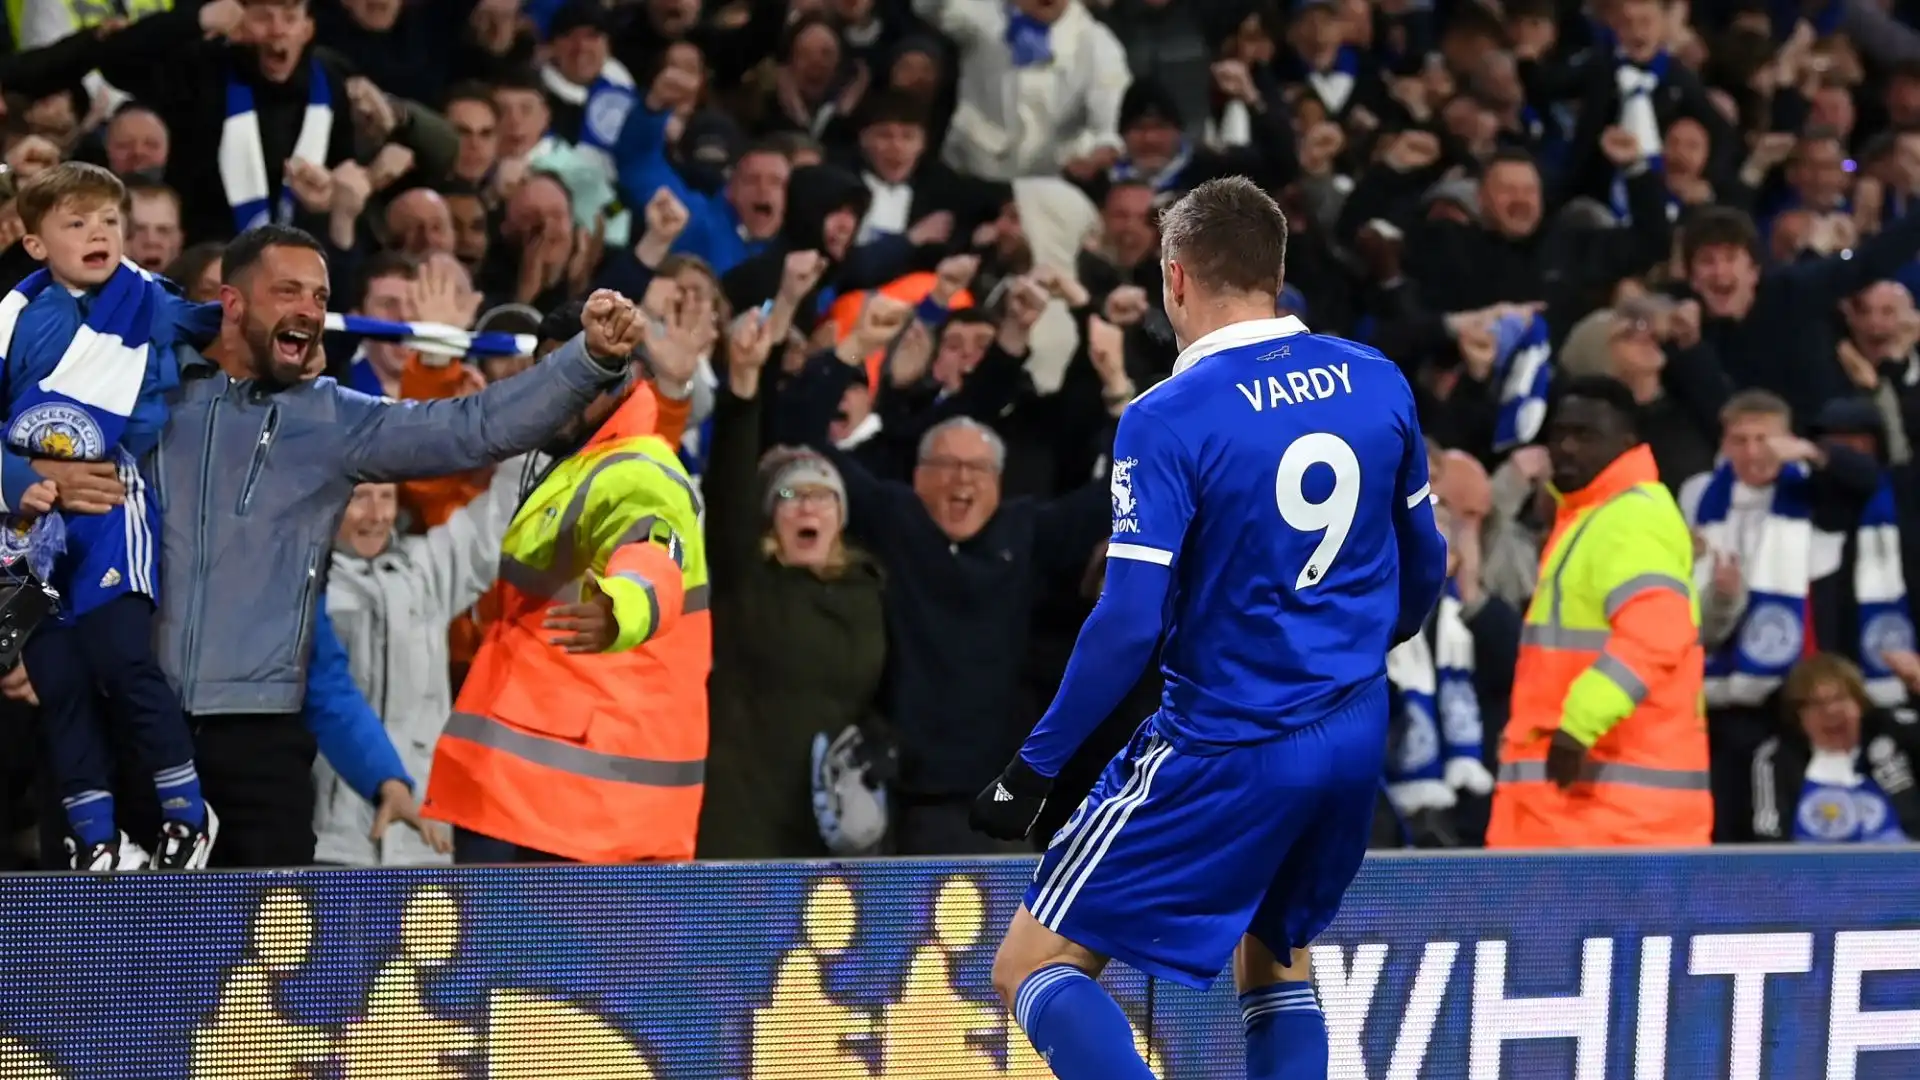 Vardy esulta rabbiosamente davanti ai tifosi del Leeds, poi viene accolto calorosamente dai supporters ospiti del Leicester